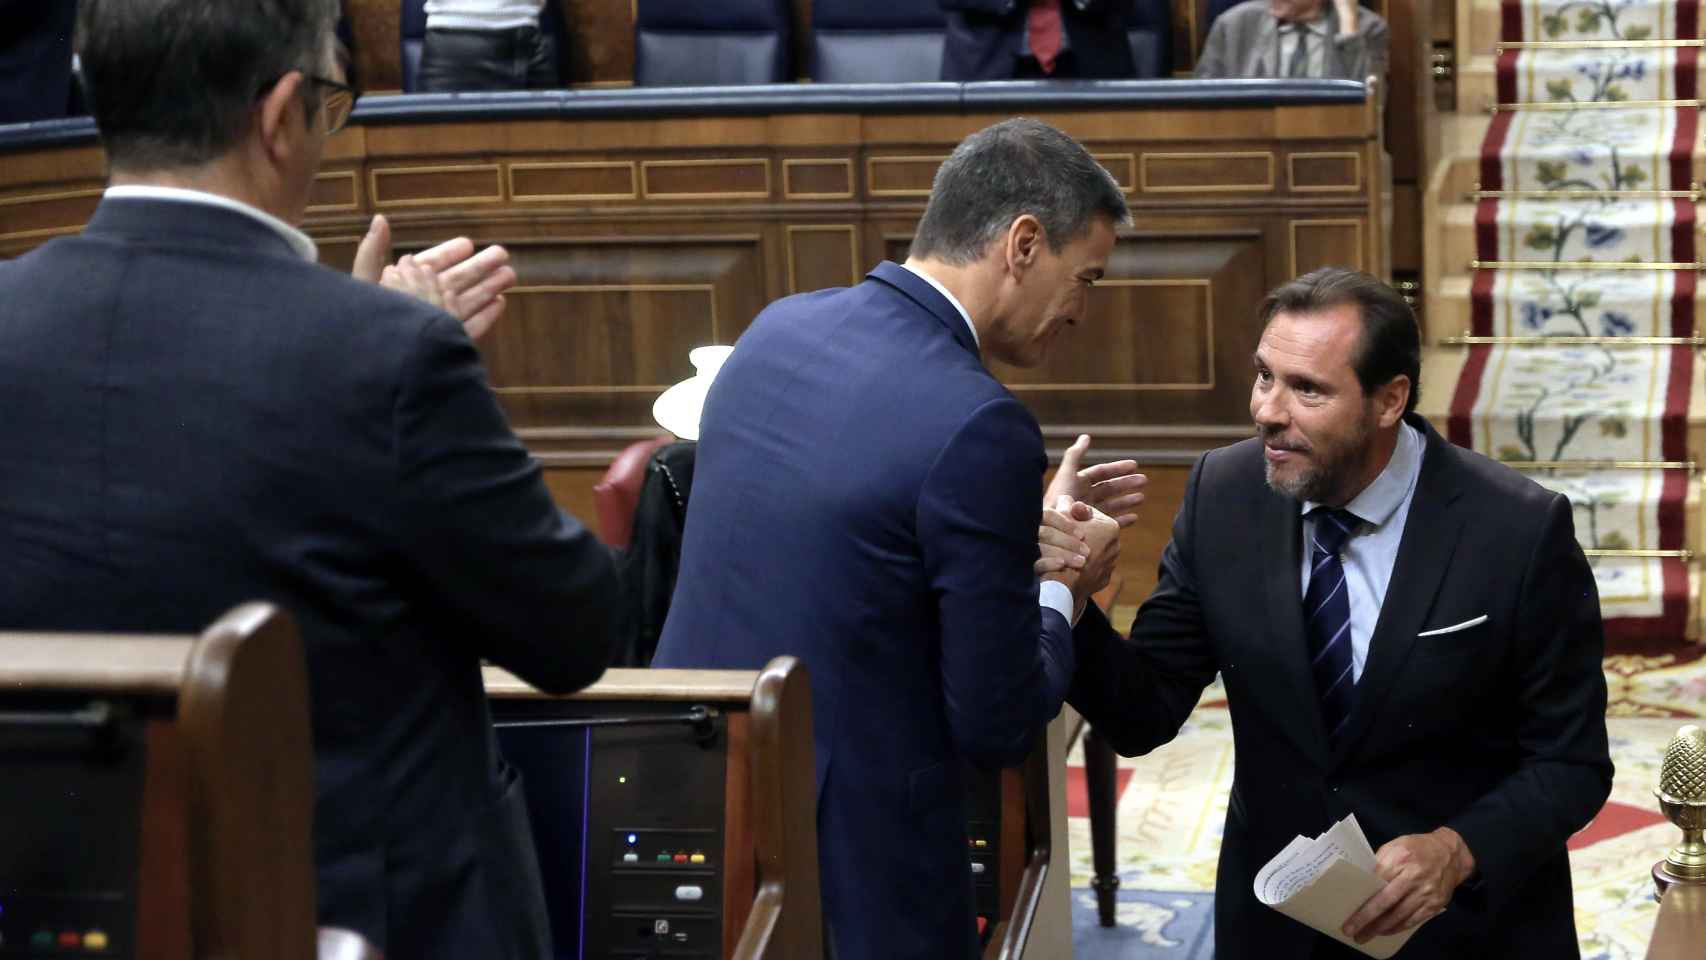 El presidente del Gobierno, Pedro Sánchez, saluda al diputado vallisoletano Óscar Puente tras su intervención en la investidura fallida de Alberto Núñez Feijóo en el Congreso de los Diputados, el pasado 29 de septiembre.